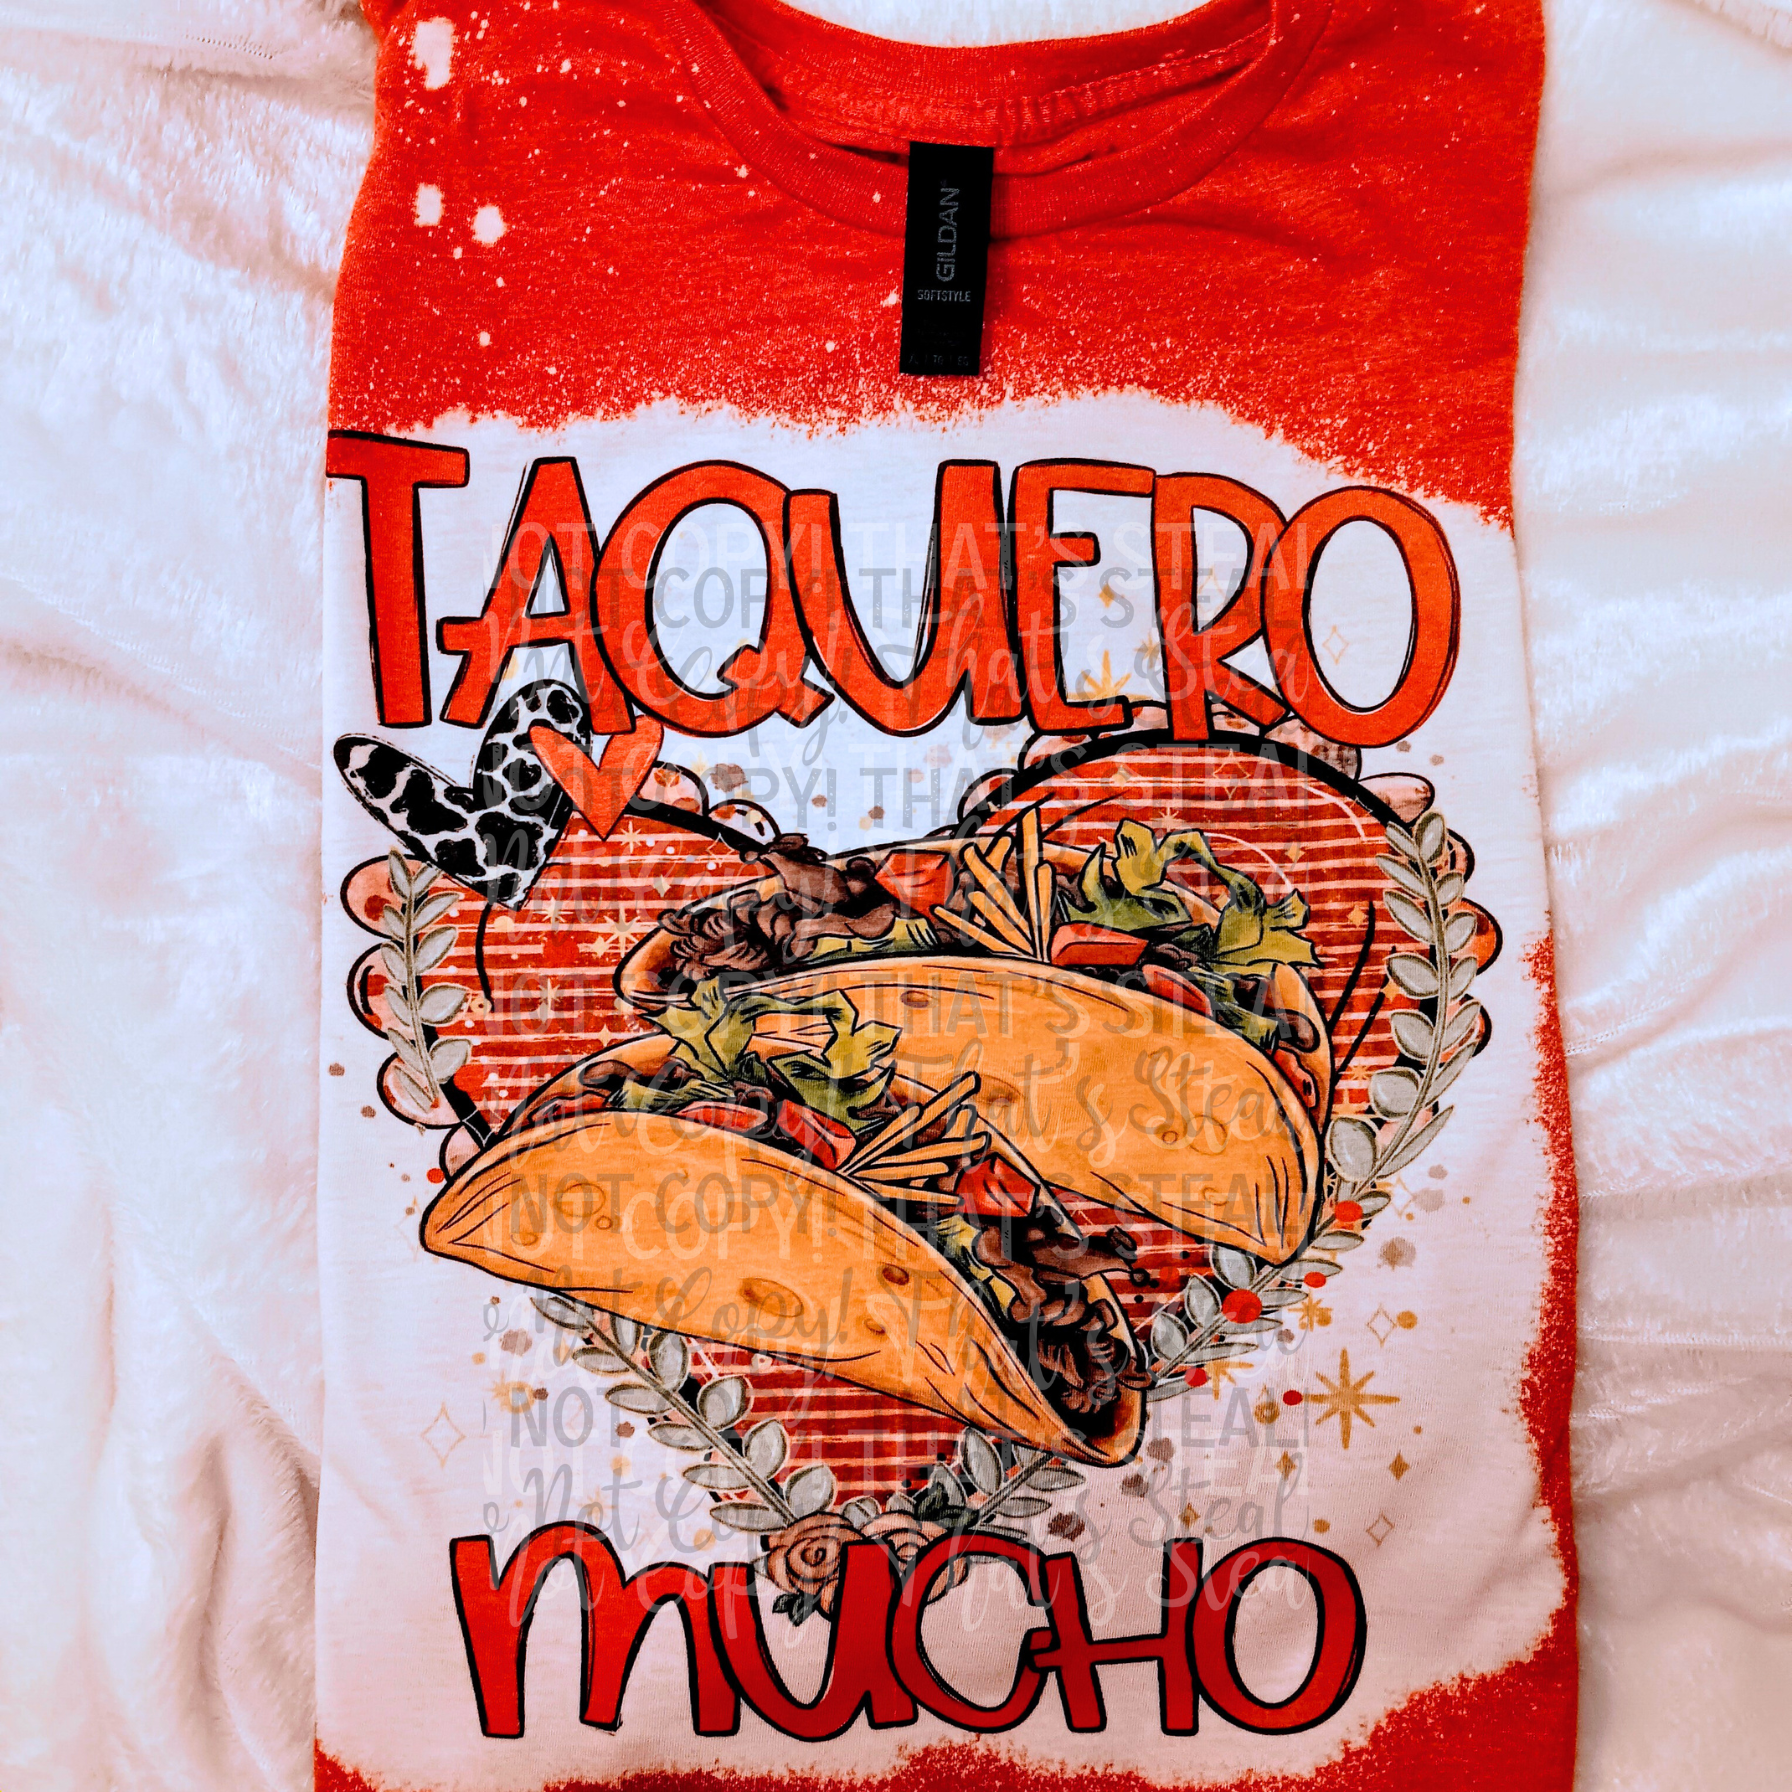 Taquero Mucho Bleached Shirt - Mayan Sub Shop